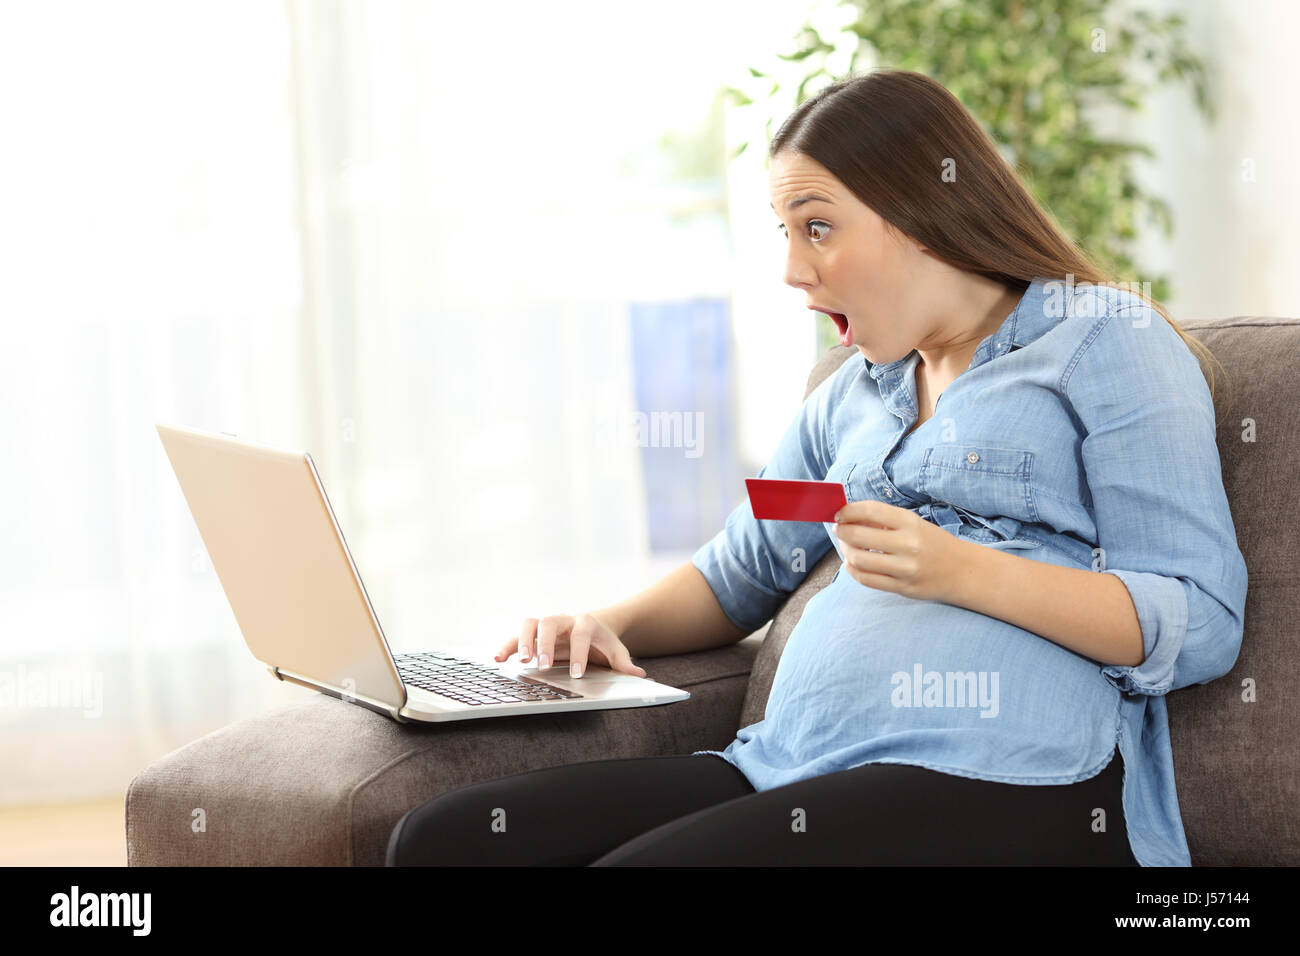 Surpris femme enceinte de vos achats en ligne par carte de crédit et d'un ordinateur portable assis sur un canapé dans le salon dans une house interior Banque D'Images